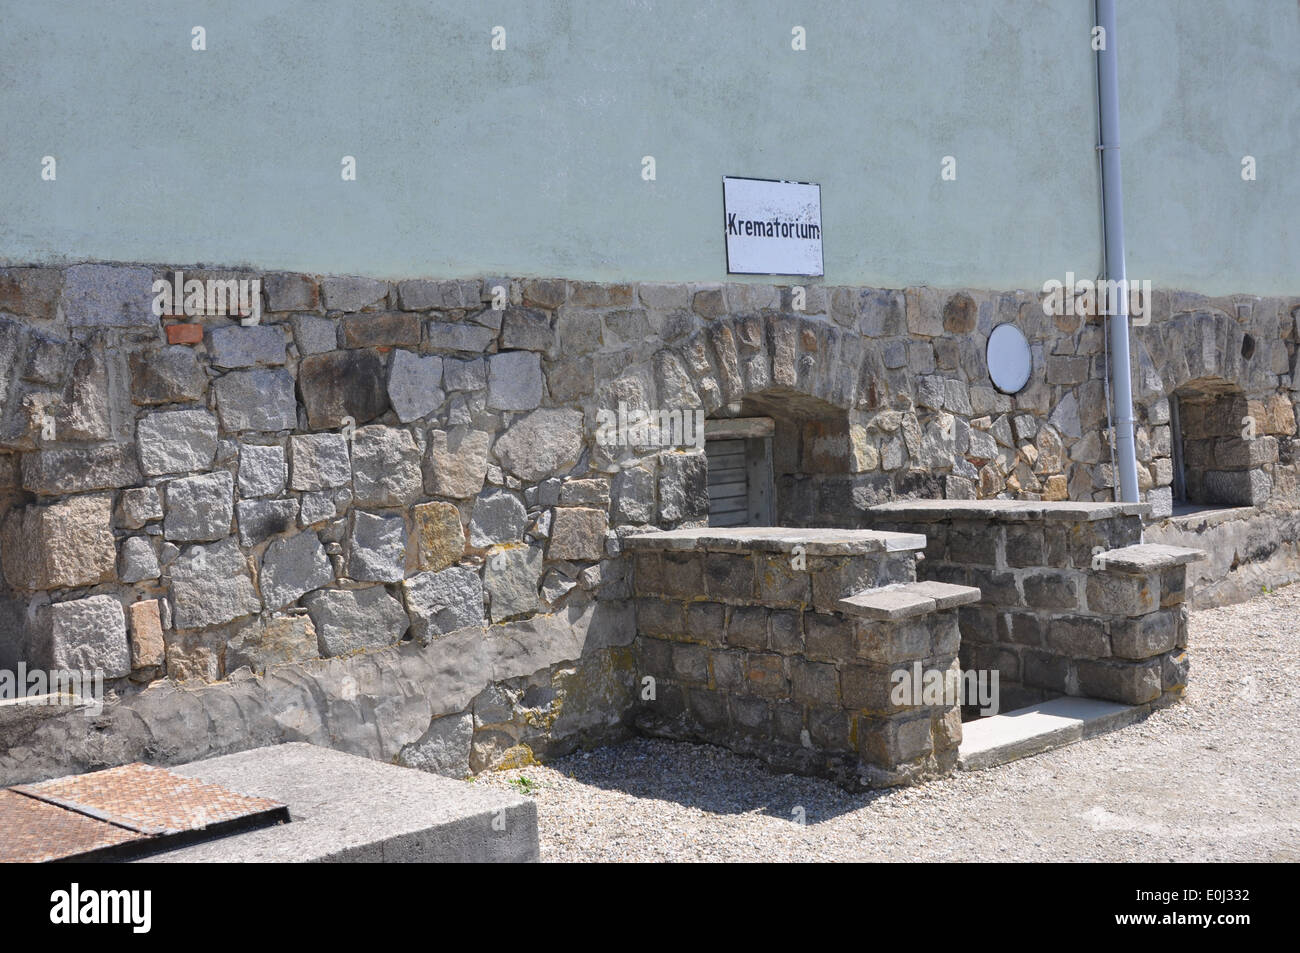 Entrance to basement crematorium at Mauthausen concentration camp, Austria. Stock Photo